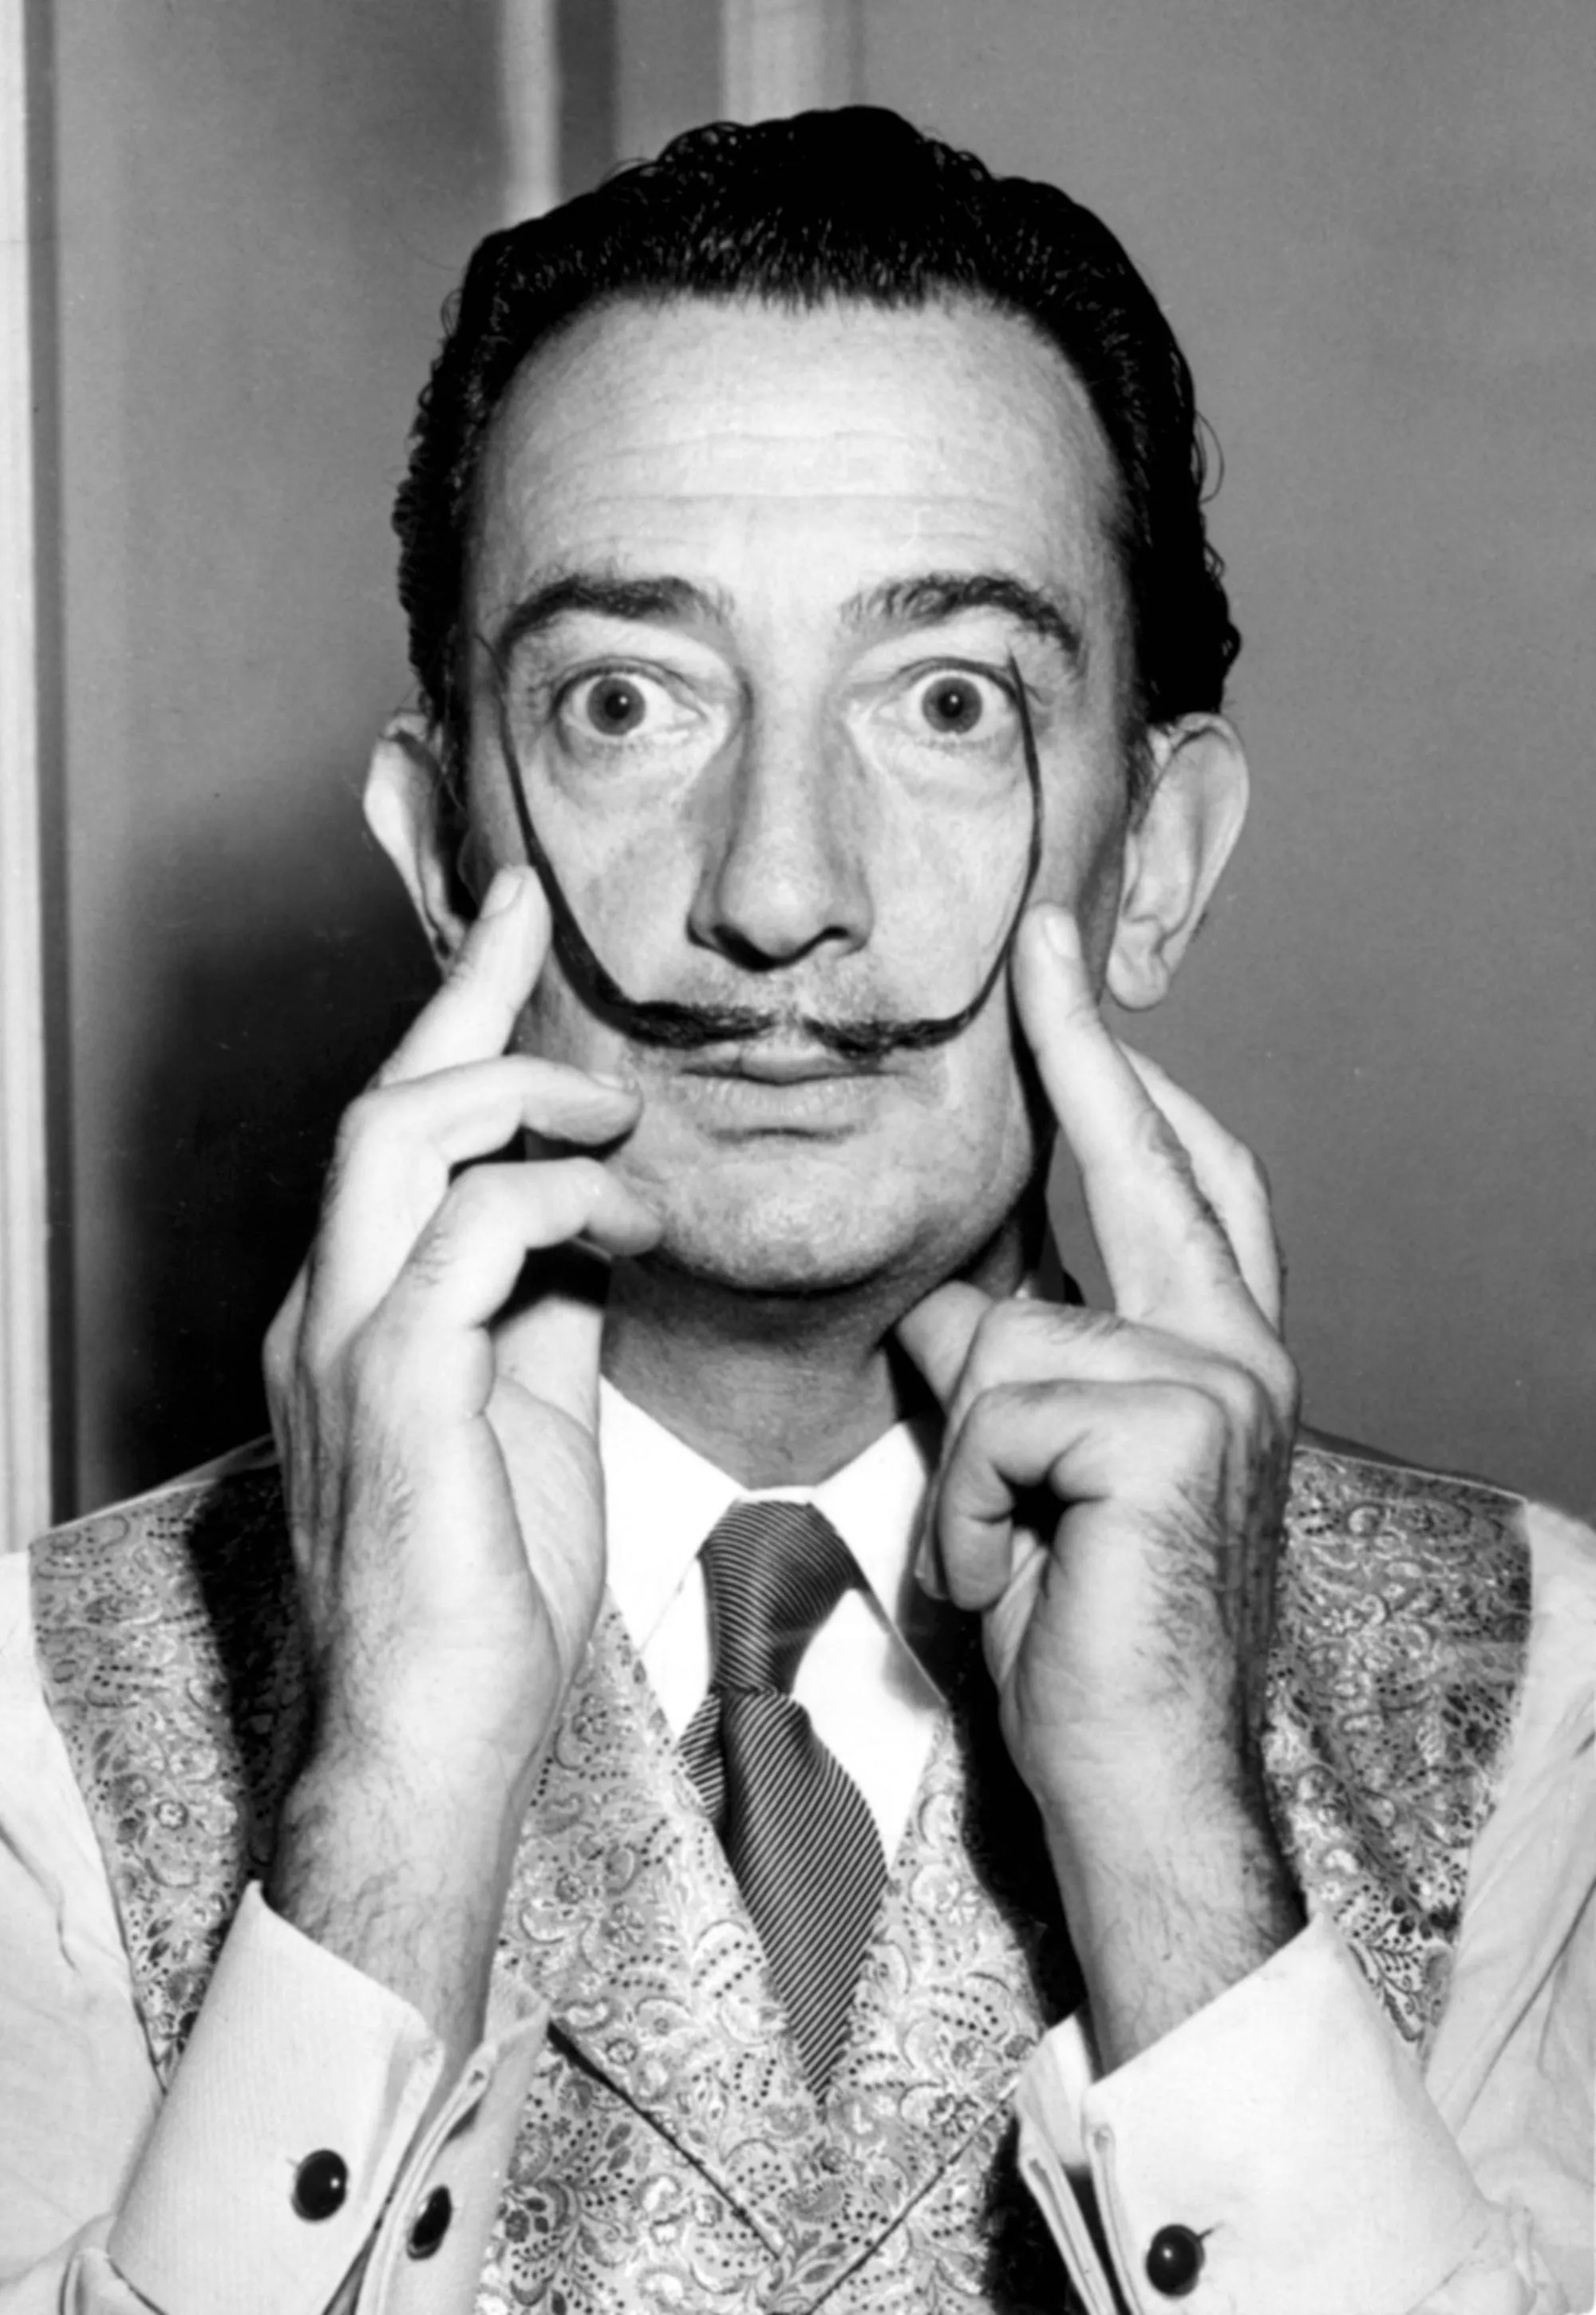 Escultor, pintor y arquitecto español, Salvador Dalí